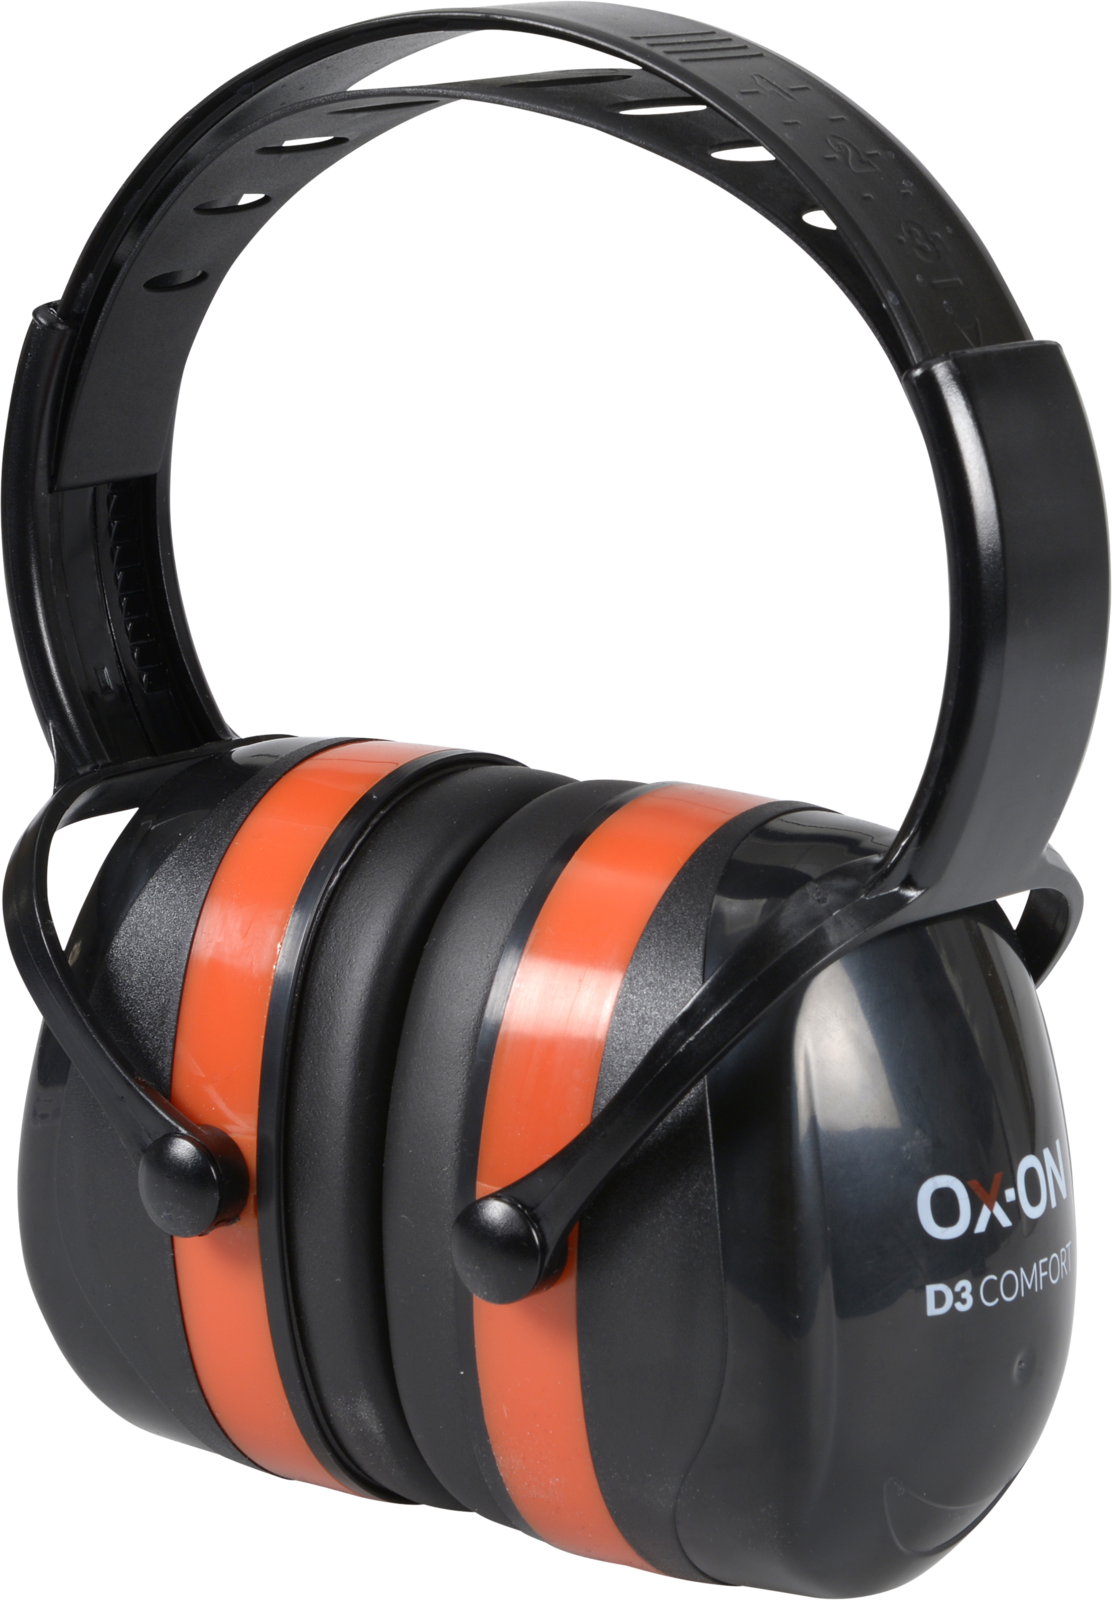 OX-ON Gehörschutz D3, 1 Stück